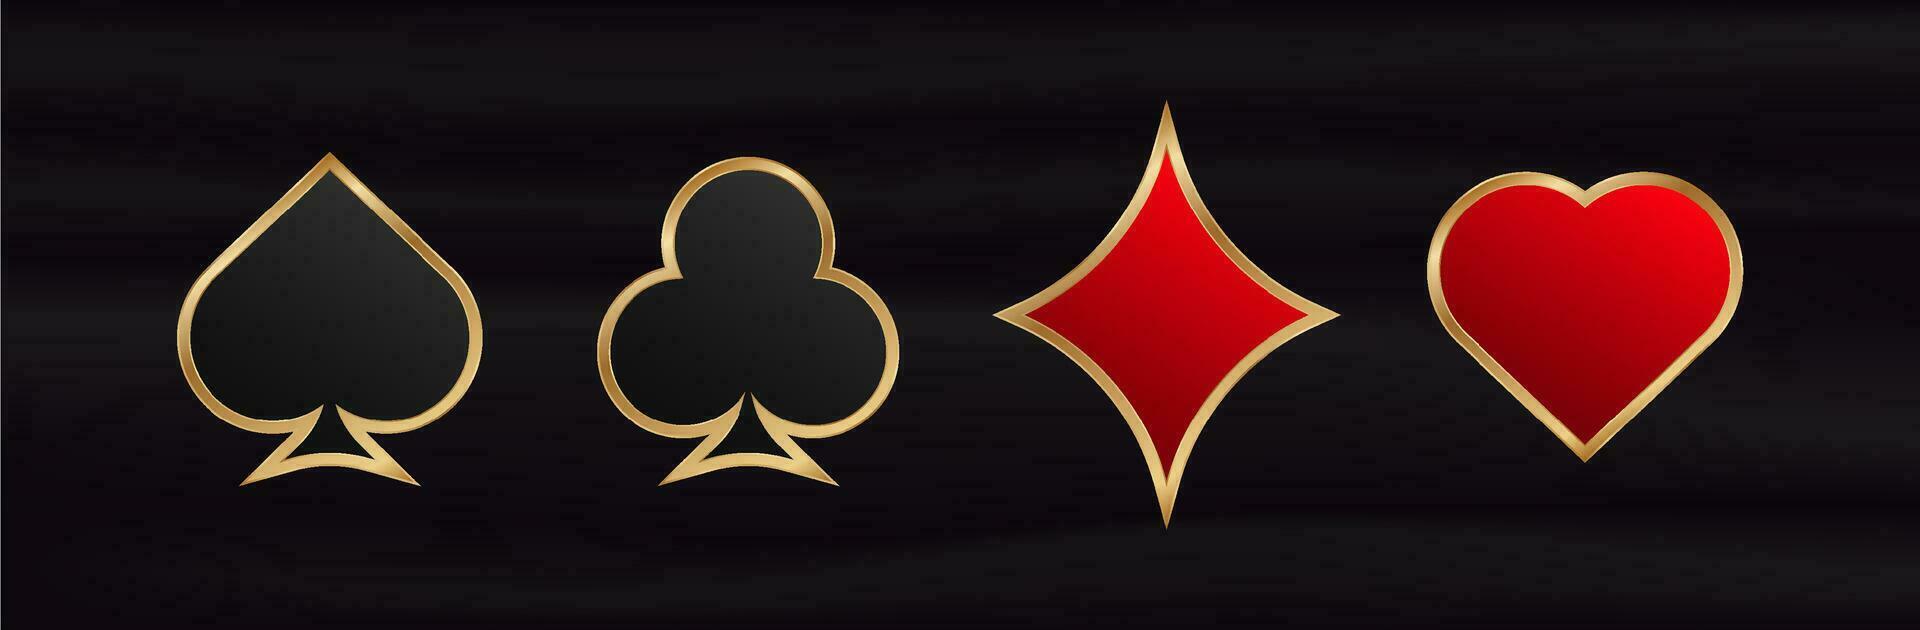 gioco d'azzardo carta abiti. gioco rosso simbolo di fortuna nel poker e nero riuscito gioco nel casinò con manganello e vettore scommesse